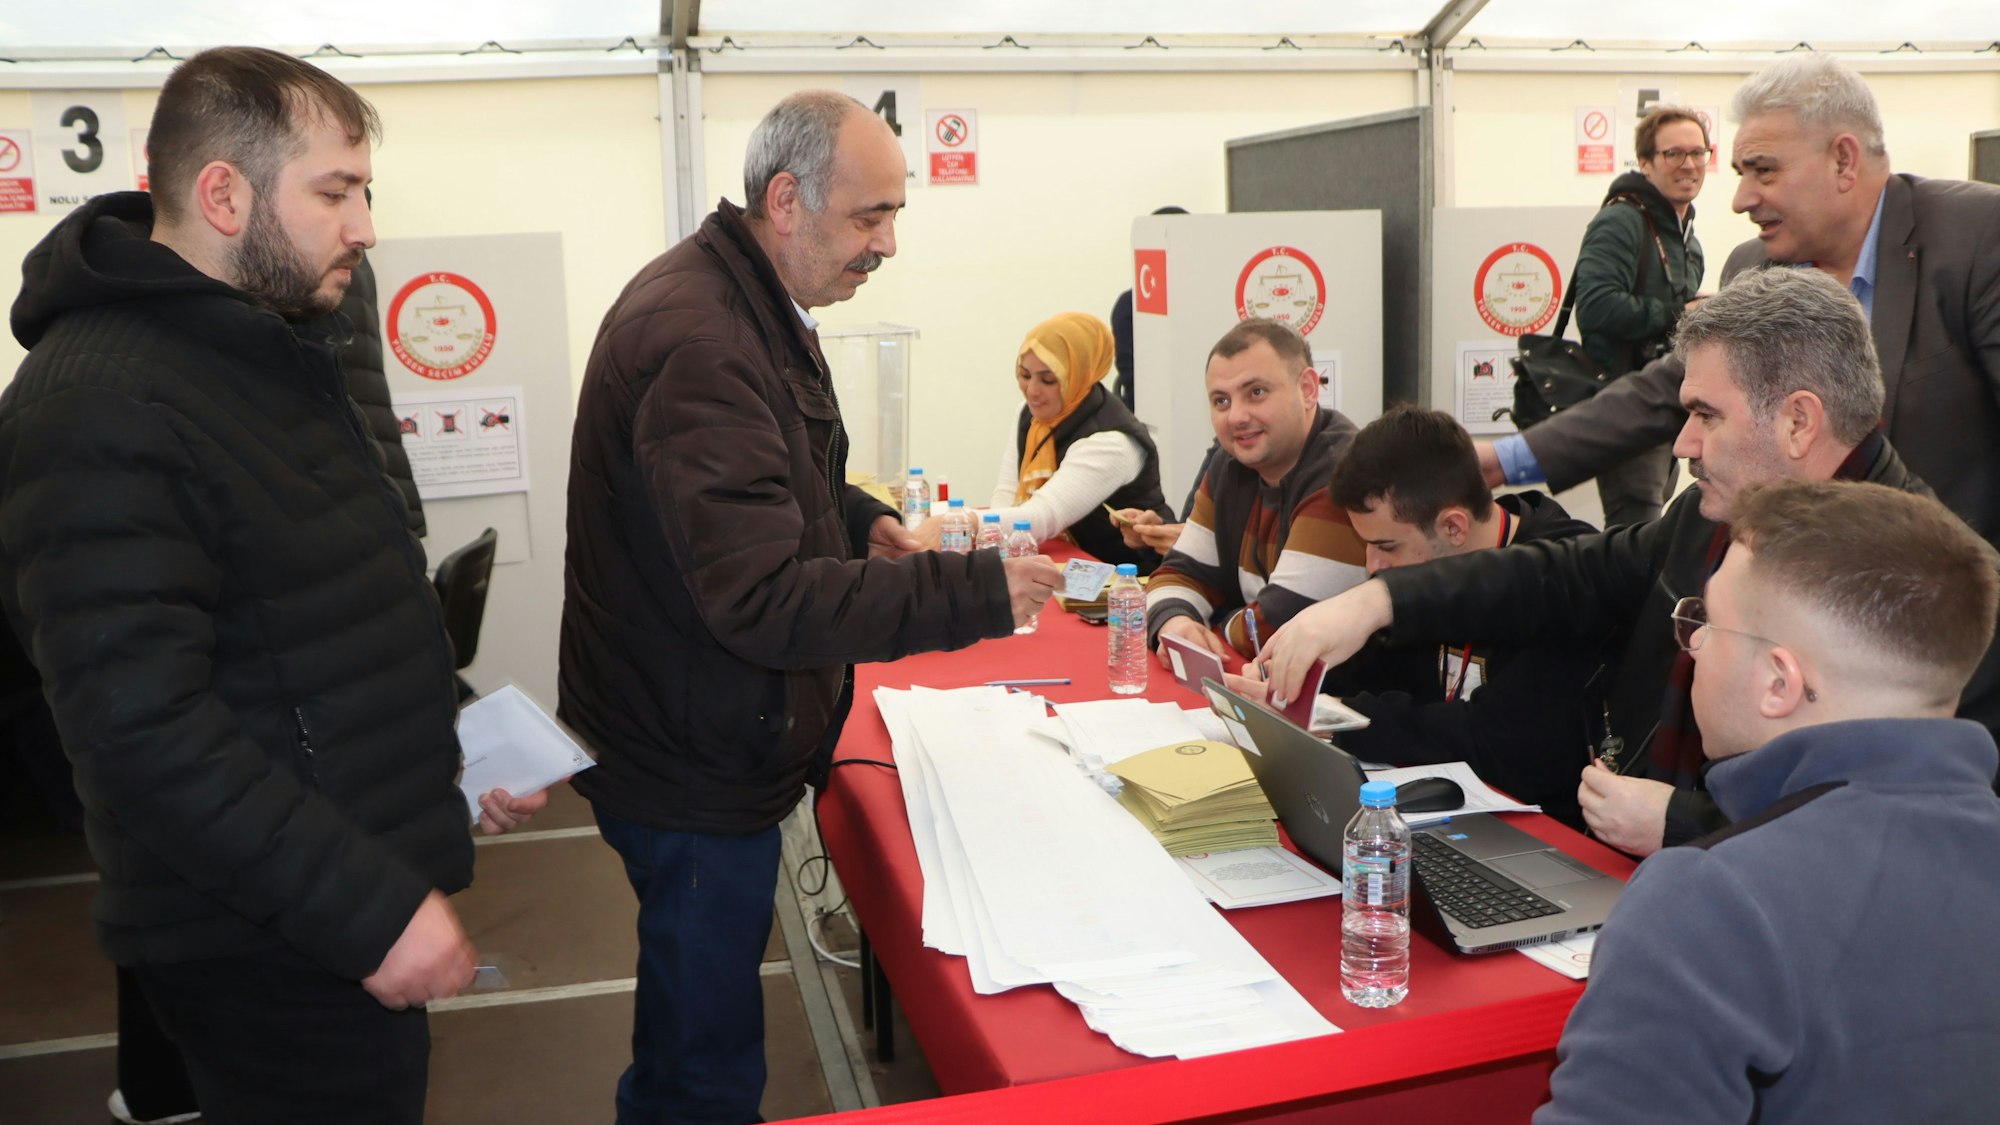 Türkei-Wahl ist in Deutschland am 27.04. gestartet. Gewählt wird unter anderem im türkischen Konsulat in Hürth

Jeder Wähler wurde registriert und erhielt erst dann seinen Wahlzettel.